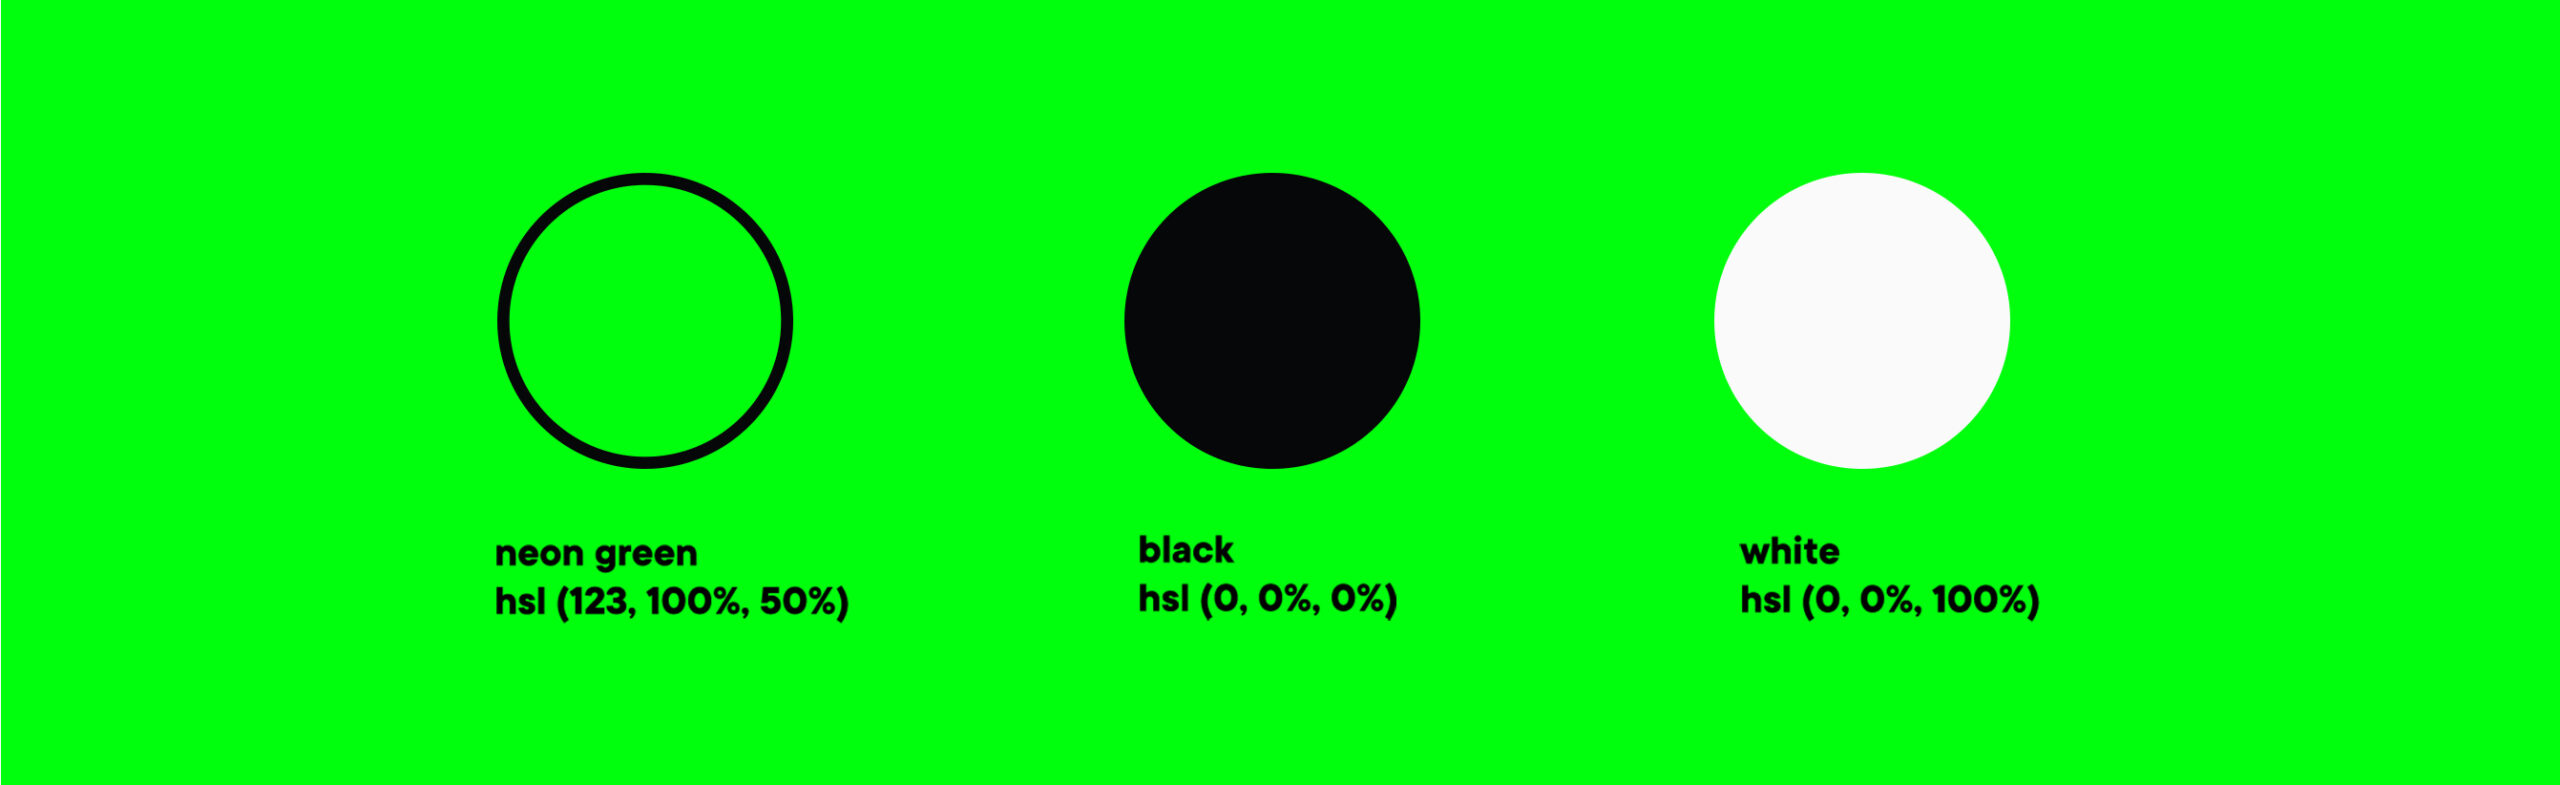 kleurenpalet voor StopCO2: fluogroen, zwart en wit